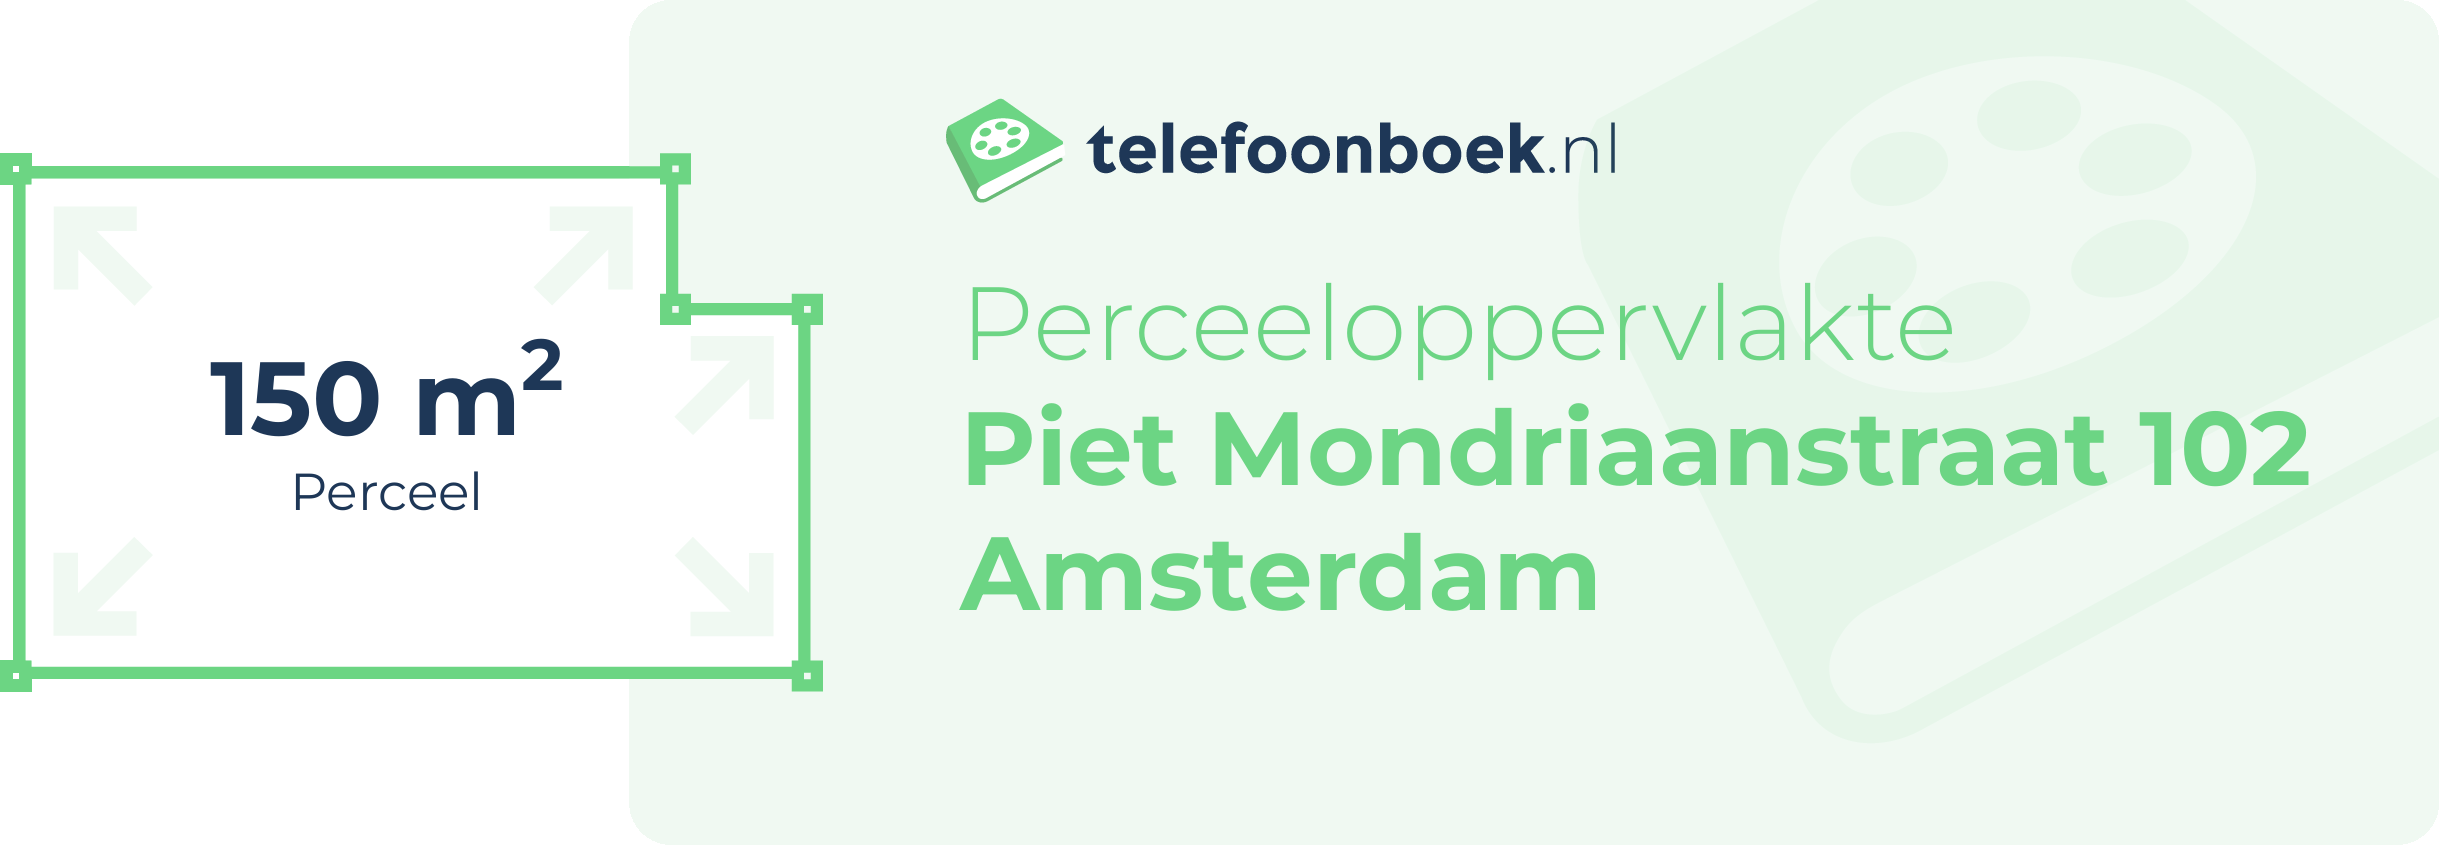 Perceeloppervlakte Piet Mondriaanstraat 102 Amsterdam